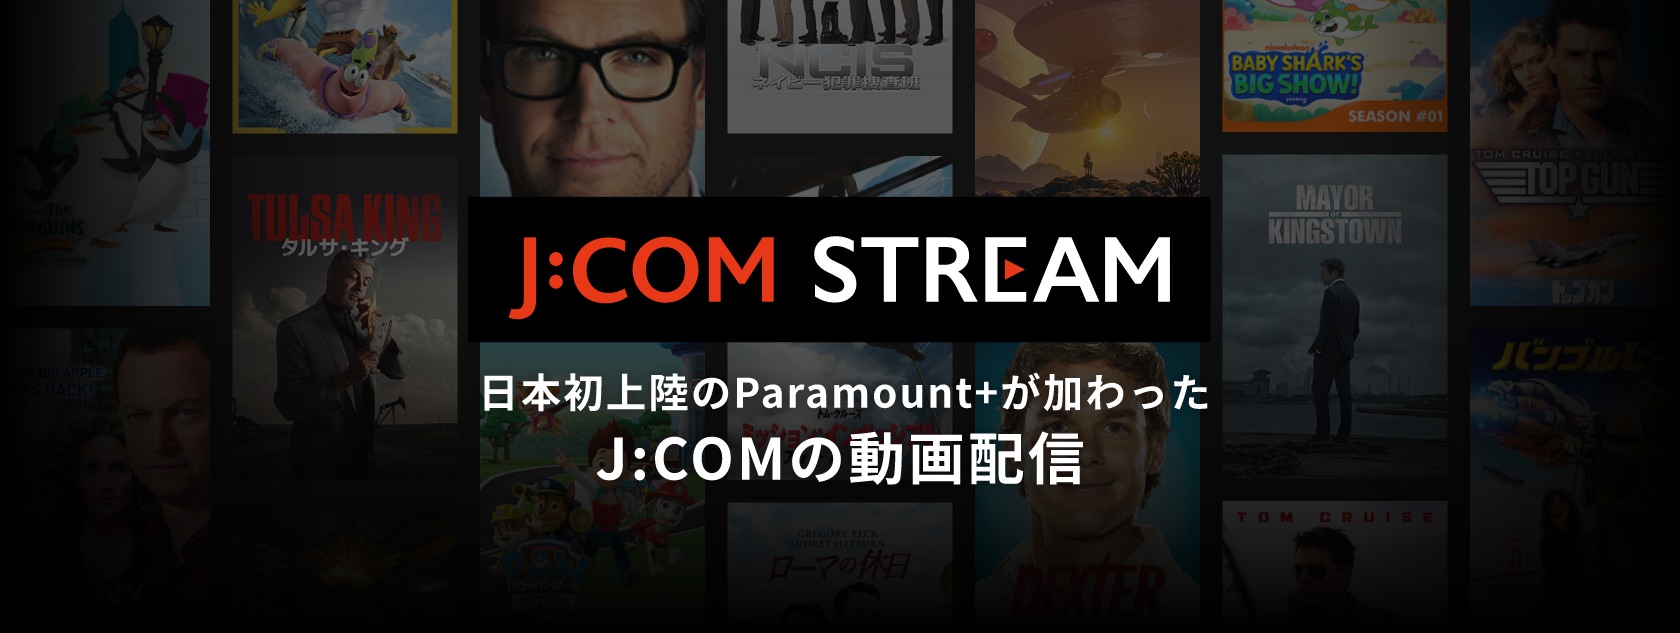 日本初上陸のParamount+が加わったJ:COMの動画配信